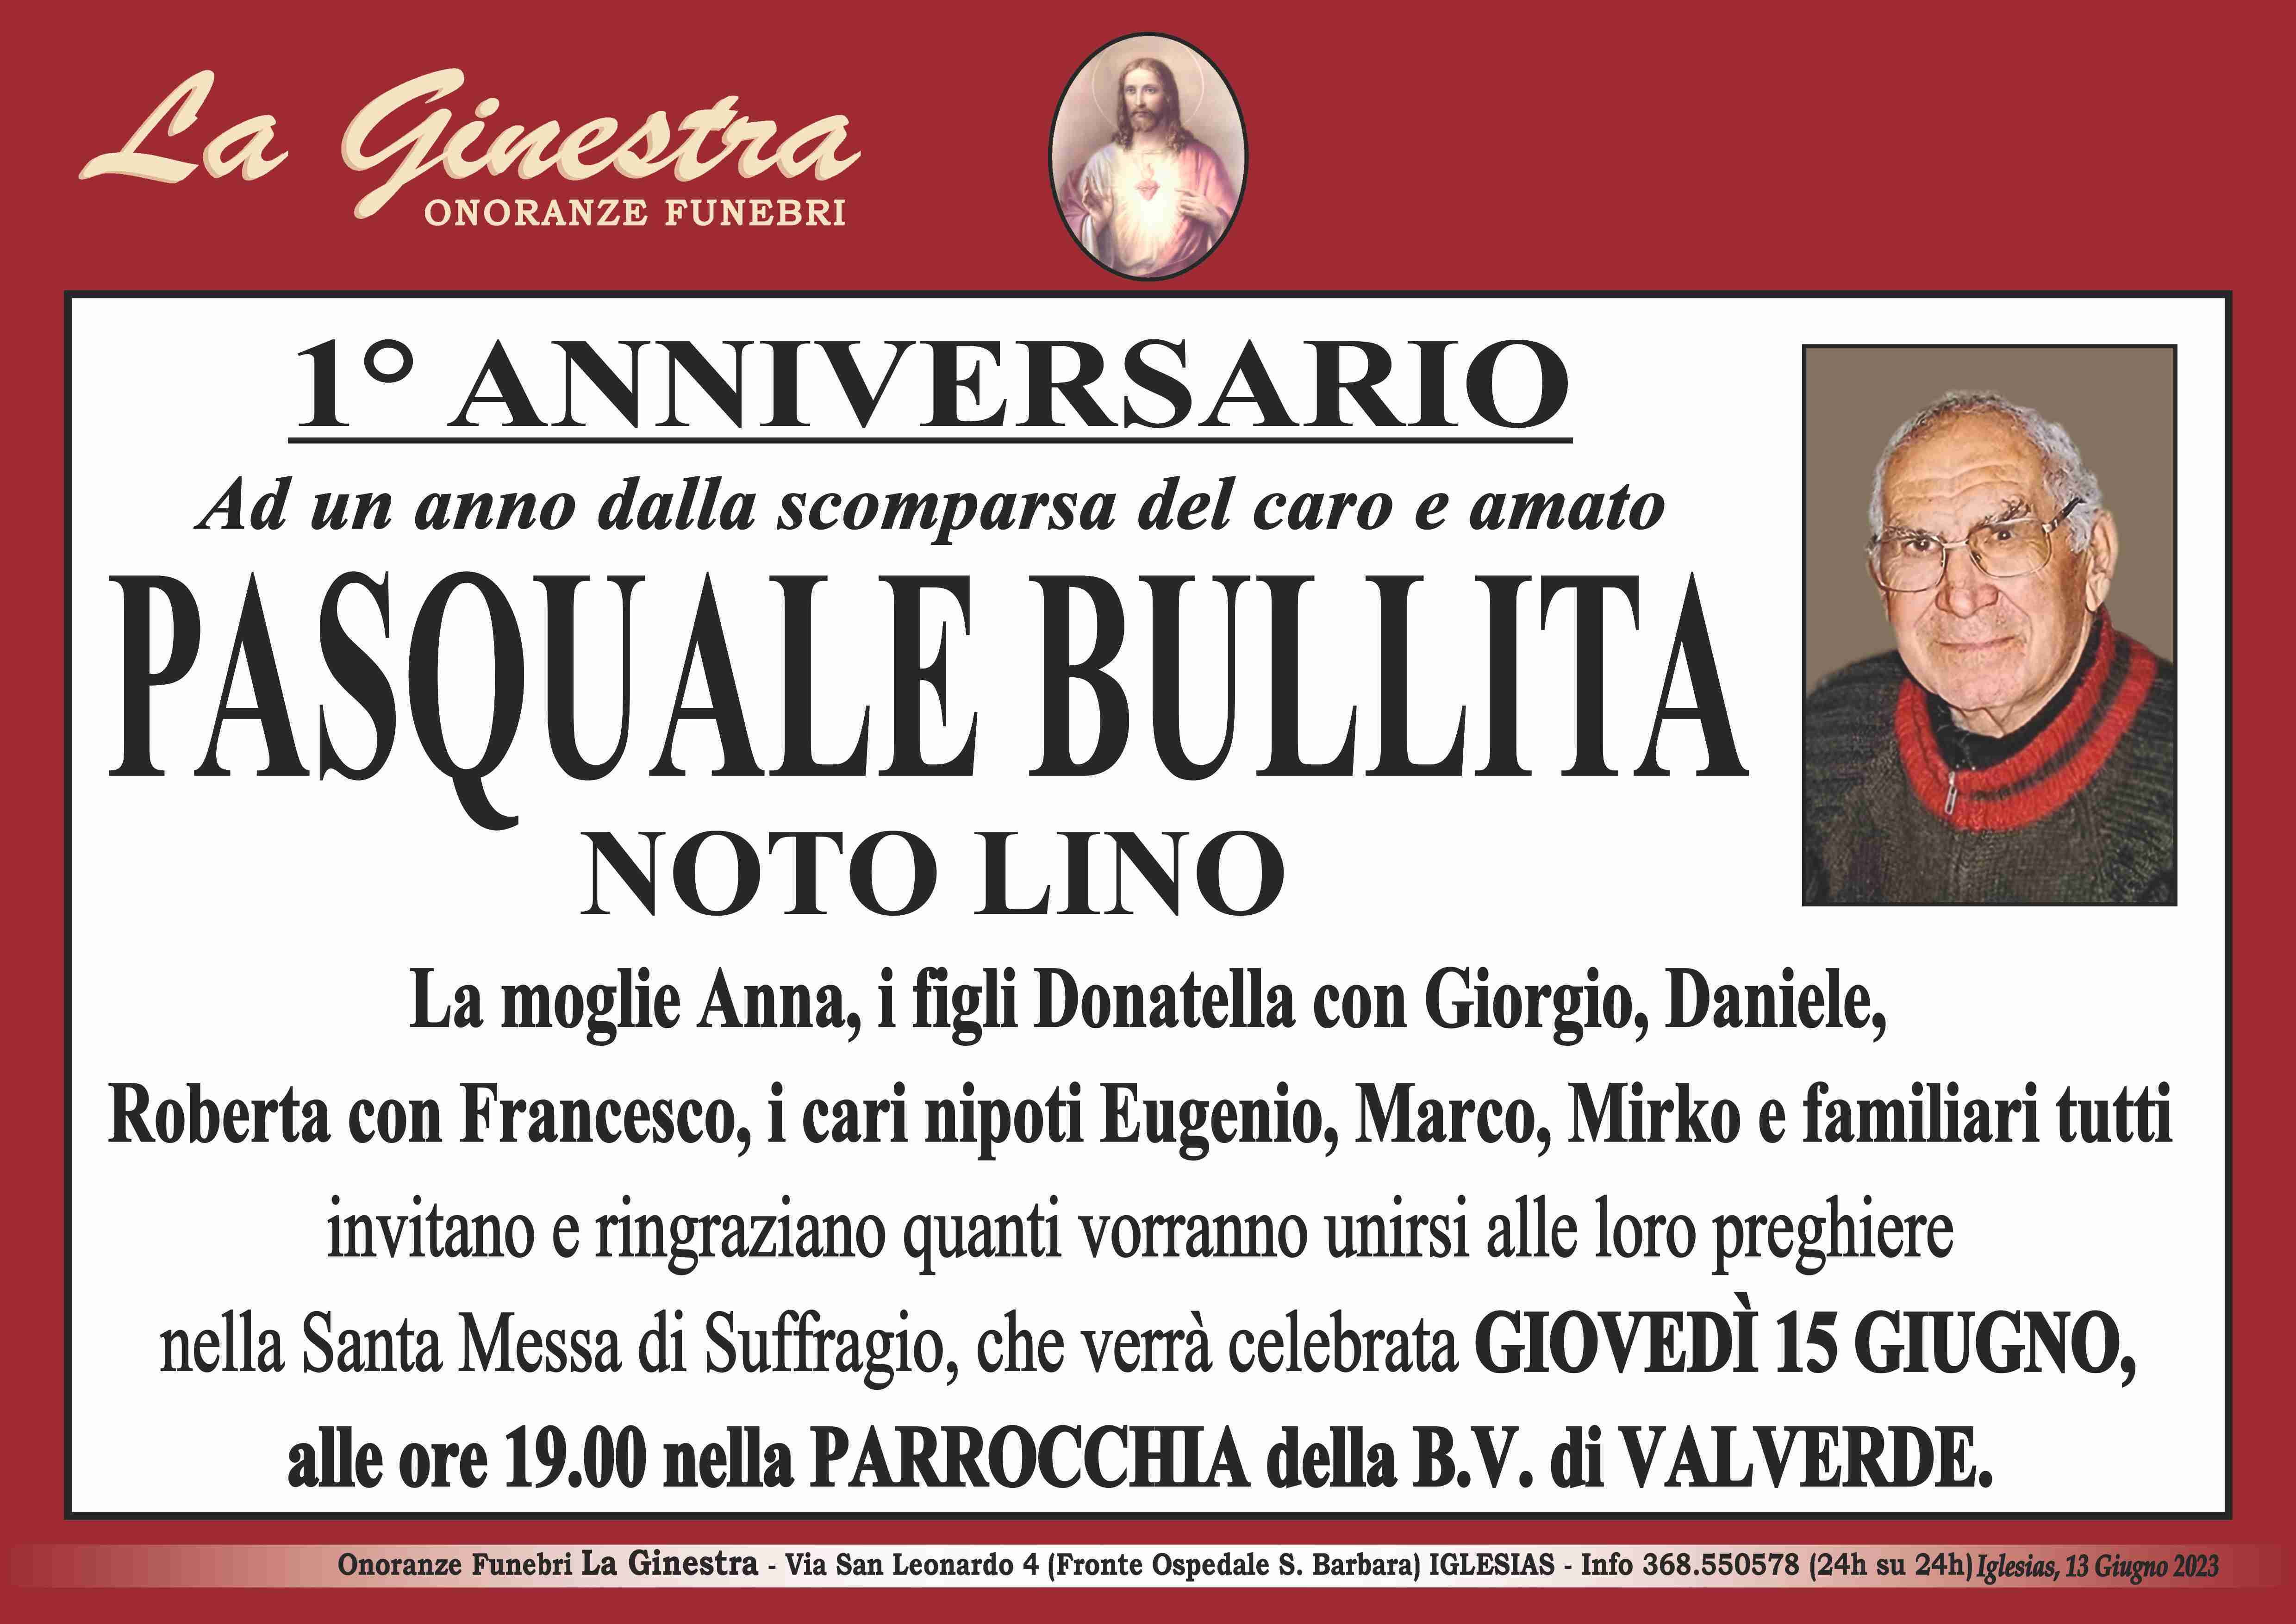 Pasquale Bullita